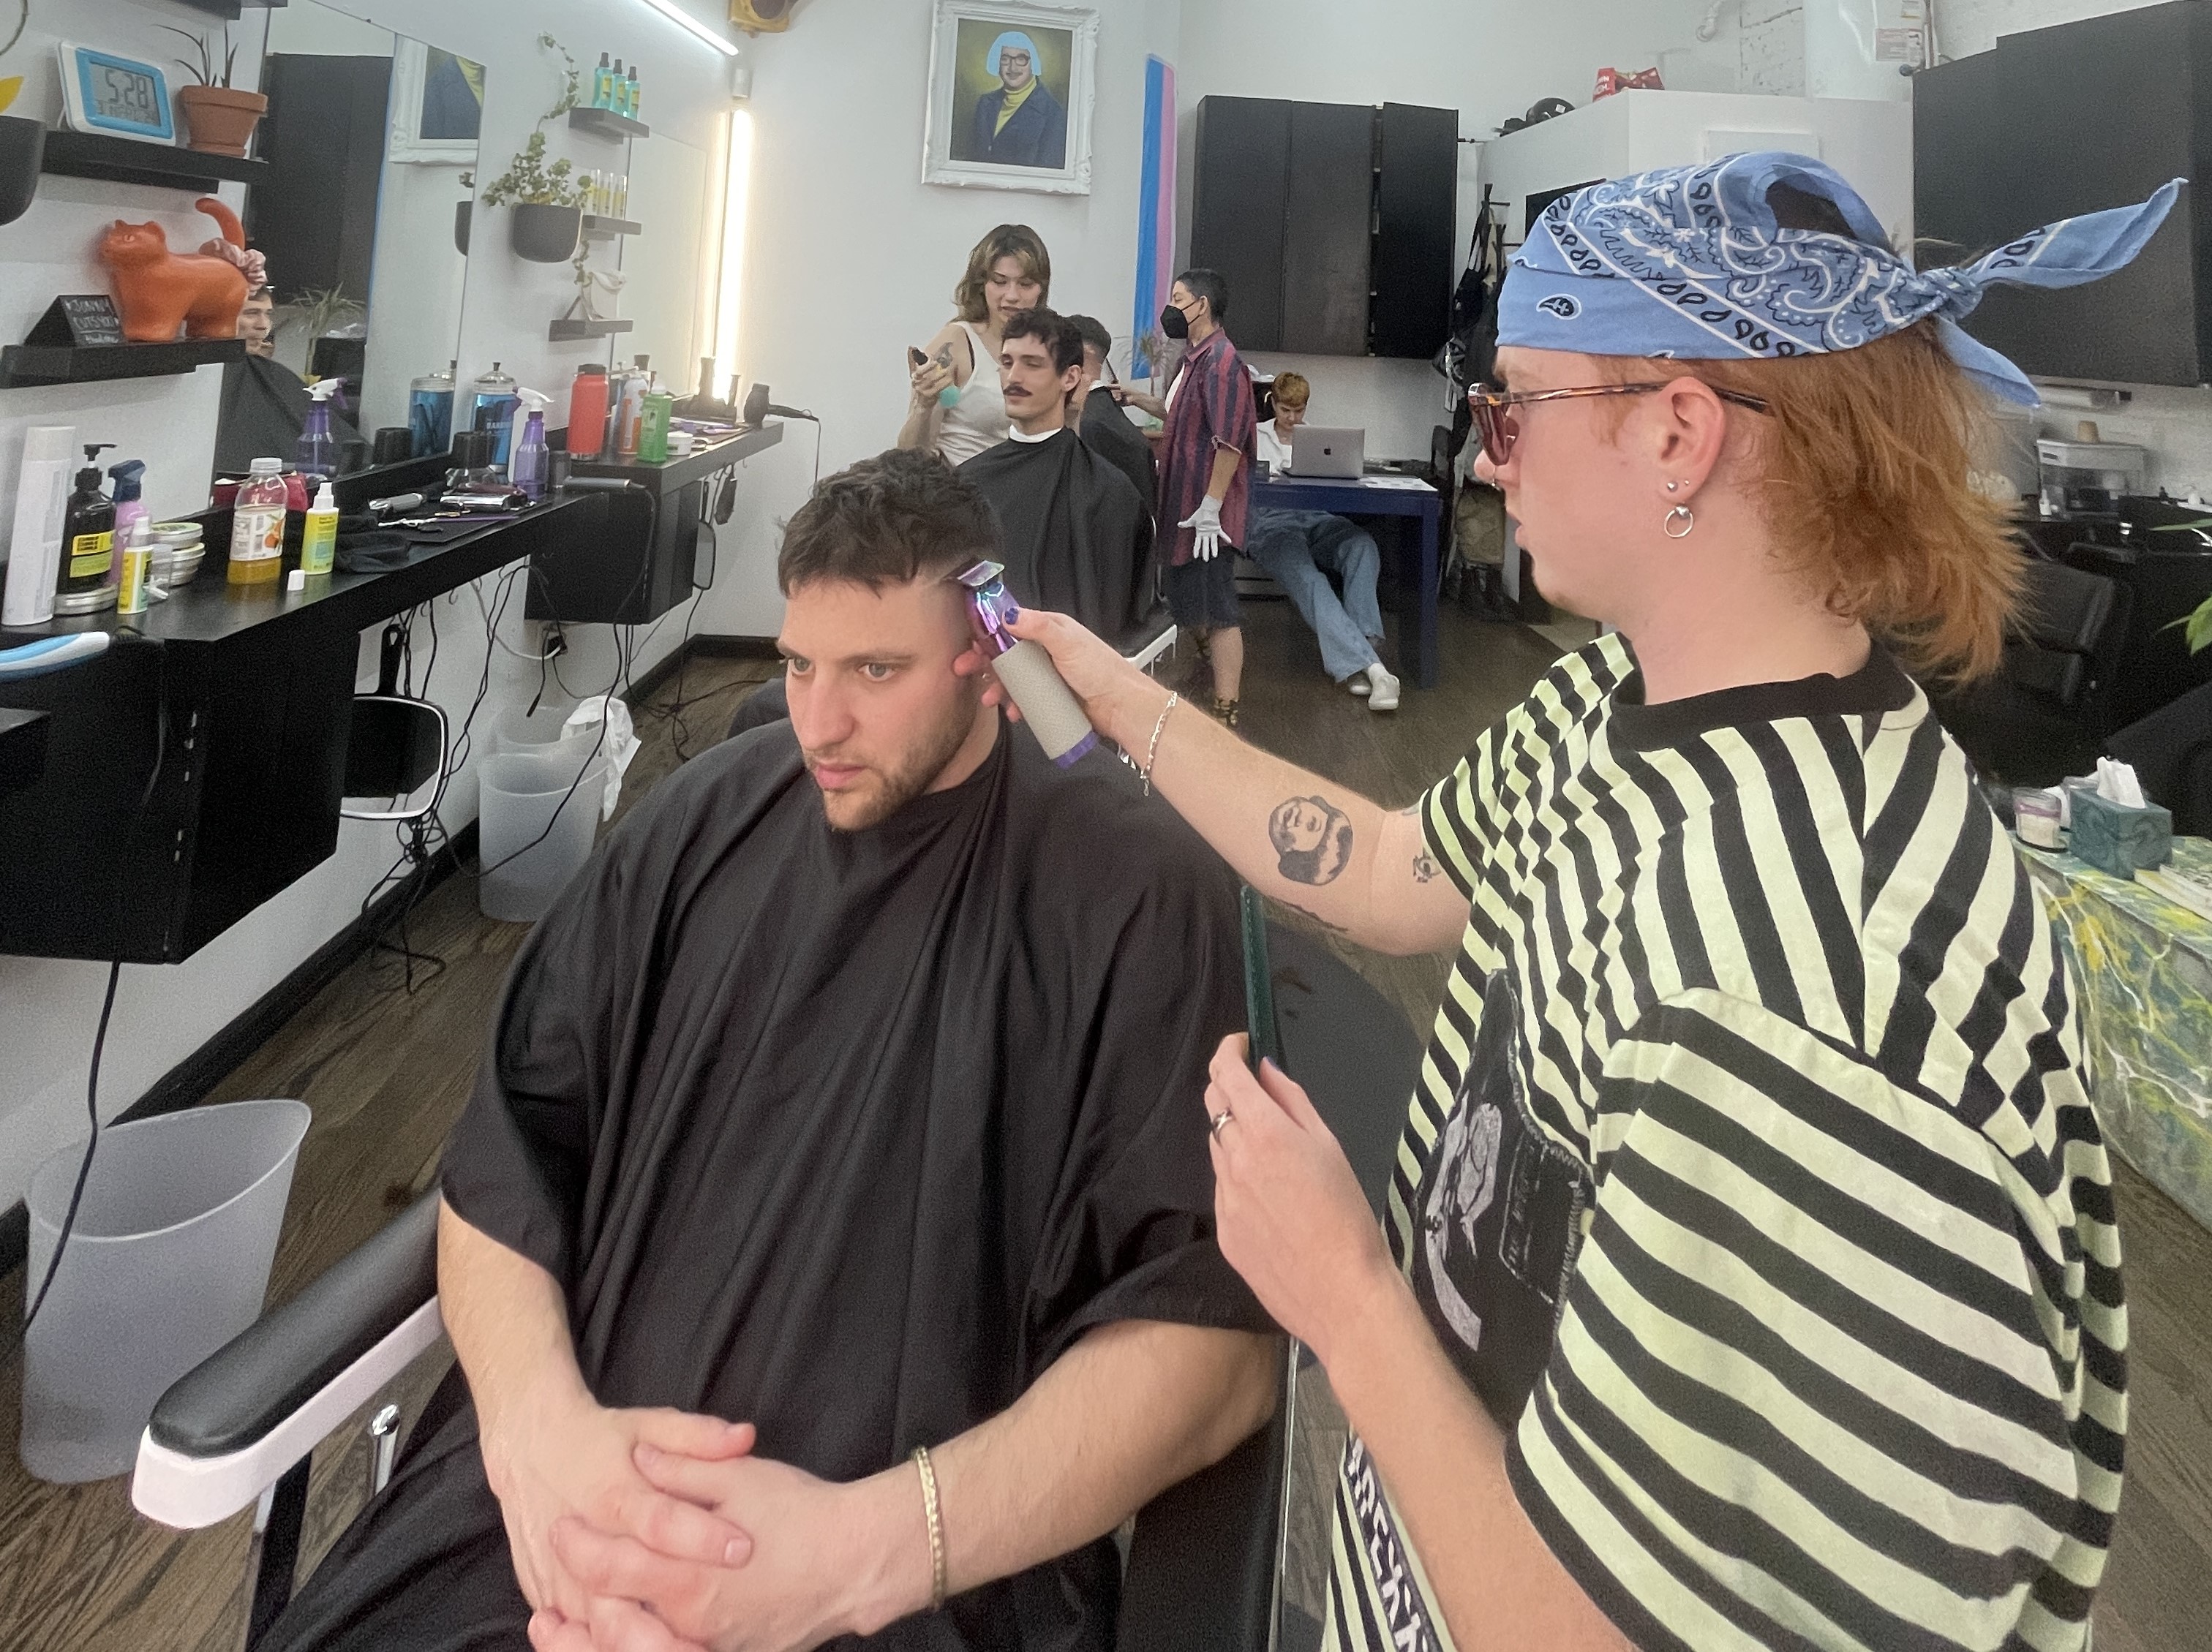 A person gets a haircut.